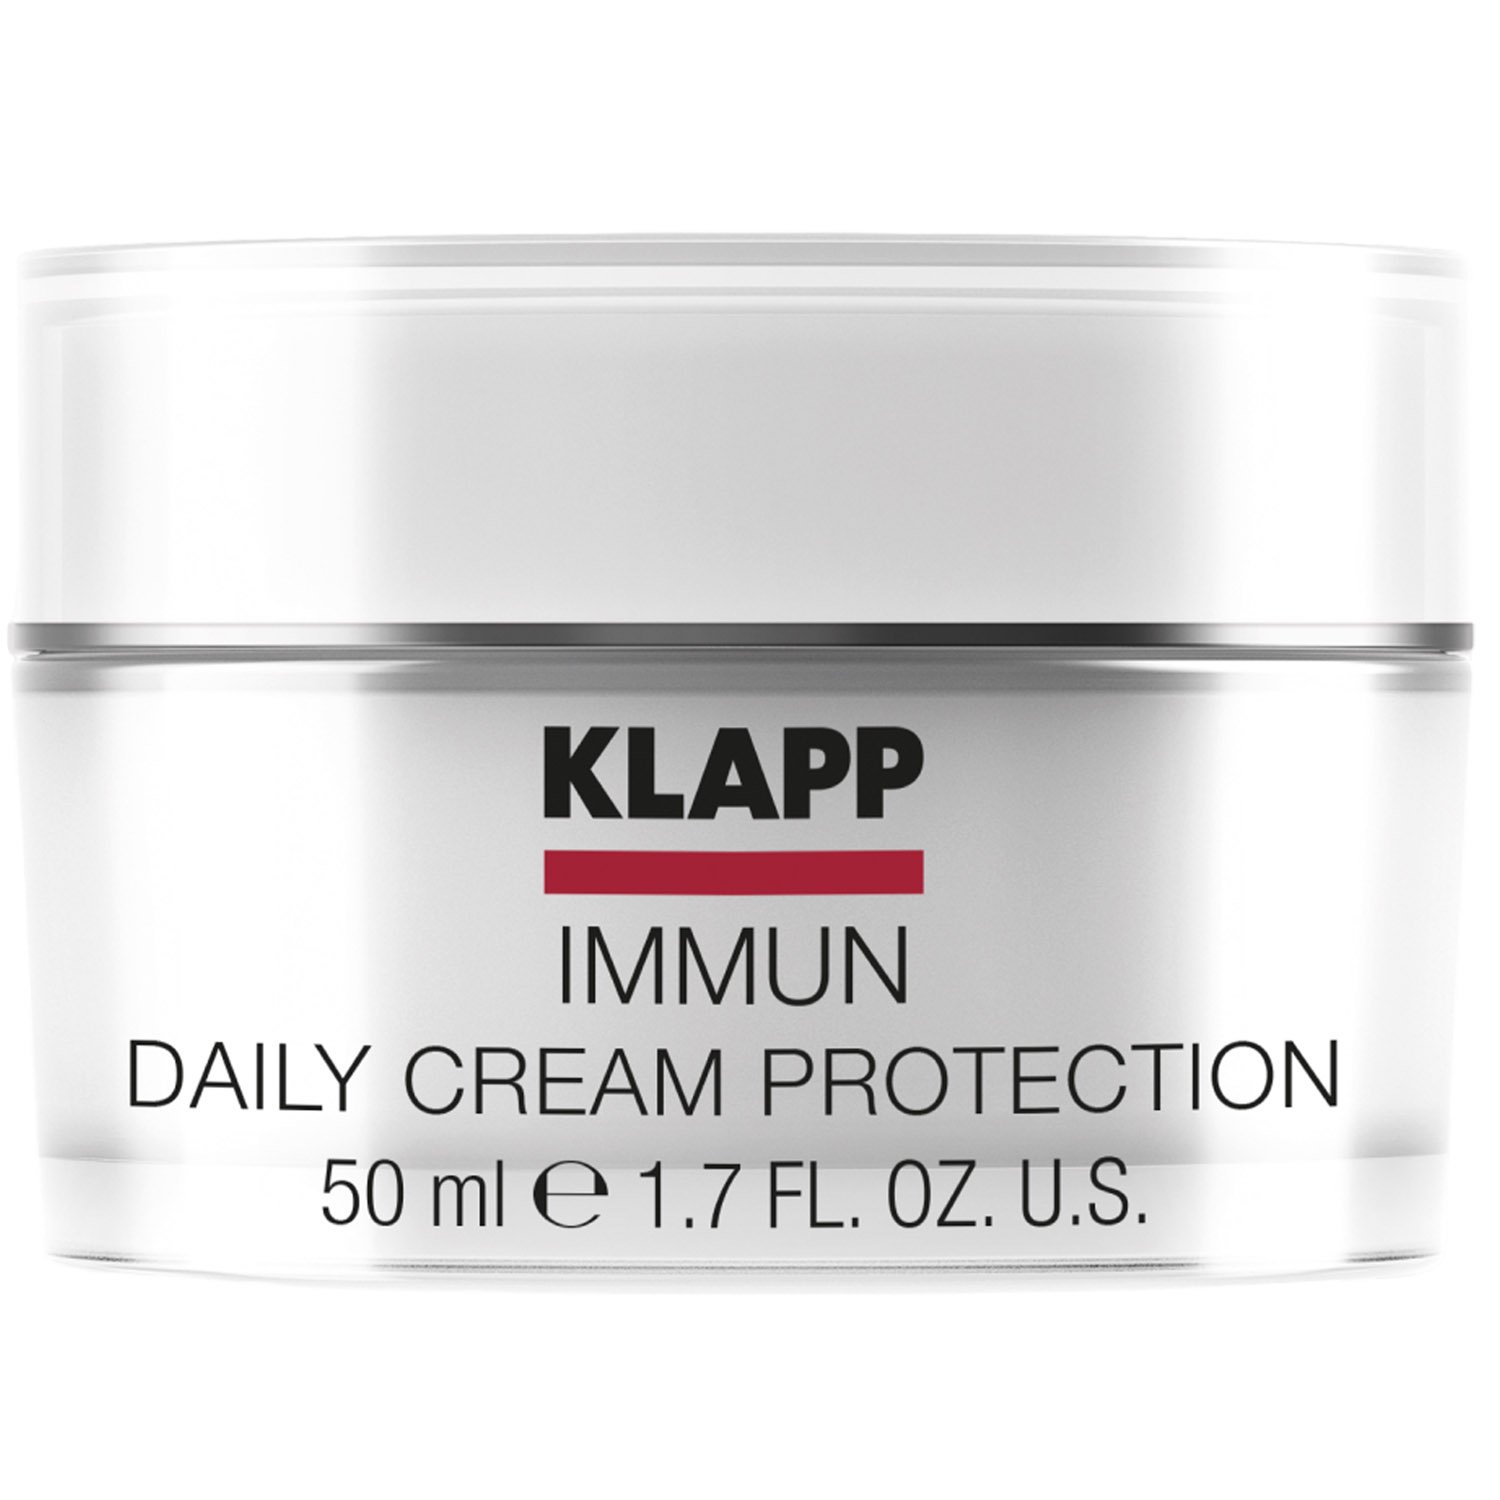 Крем для лица Klapp Immun Daily Cream Protection, дневной, 50 мл - фото 1